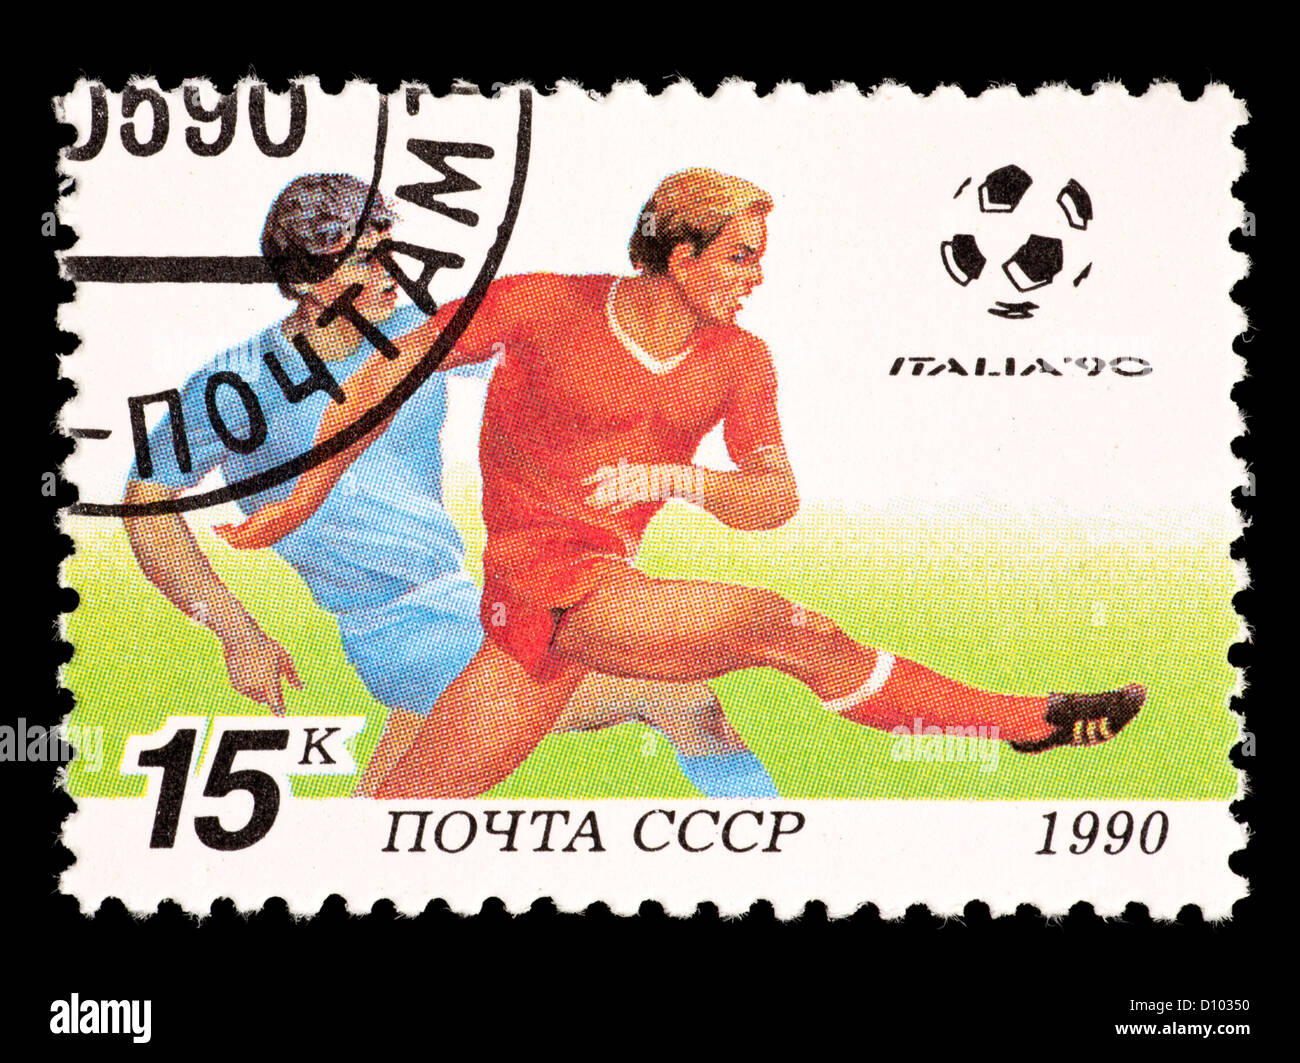 Timbre-poste de l'Union soviétique (URSS) représentant un gardien de football, émis pour la Coupe du Monde 1990 en Italie. Banque D'Images